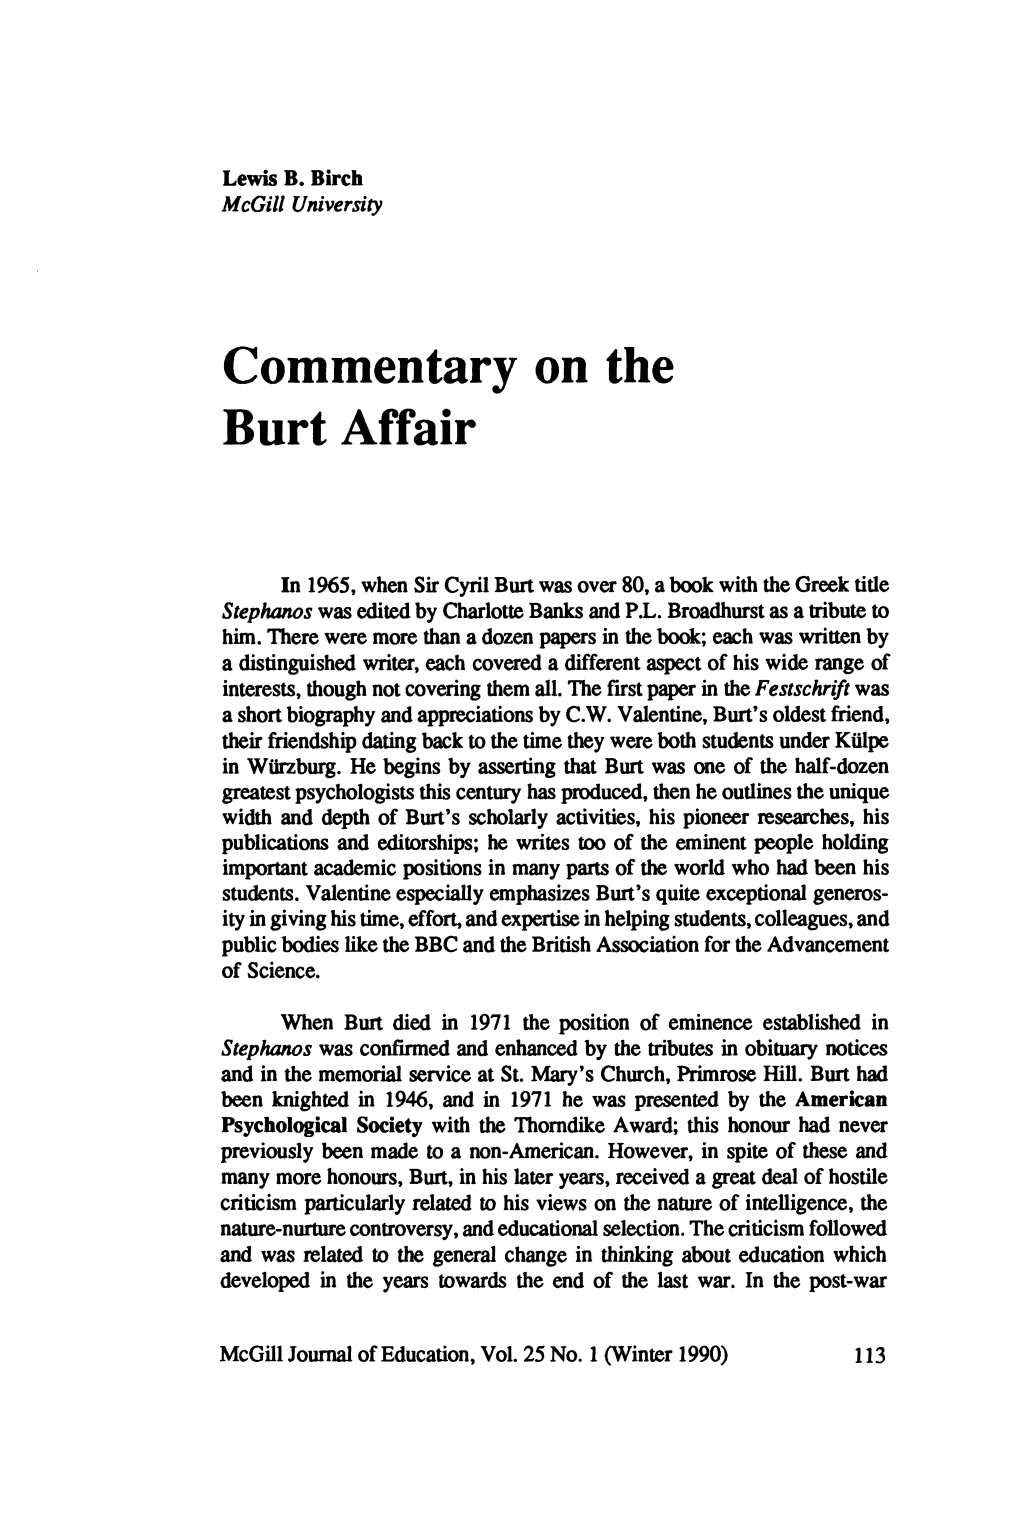 Commentary on the Burt Affair